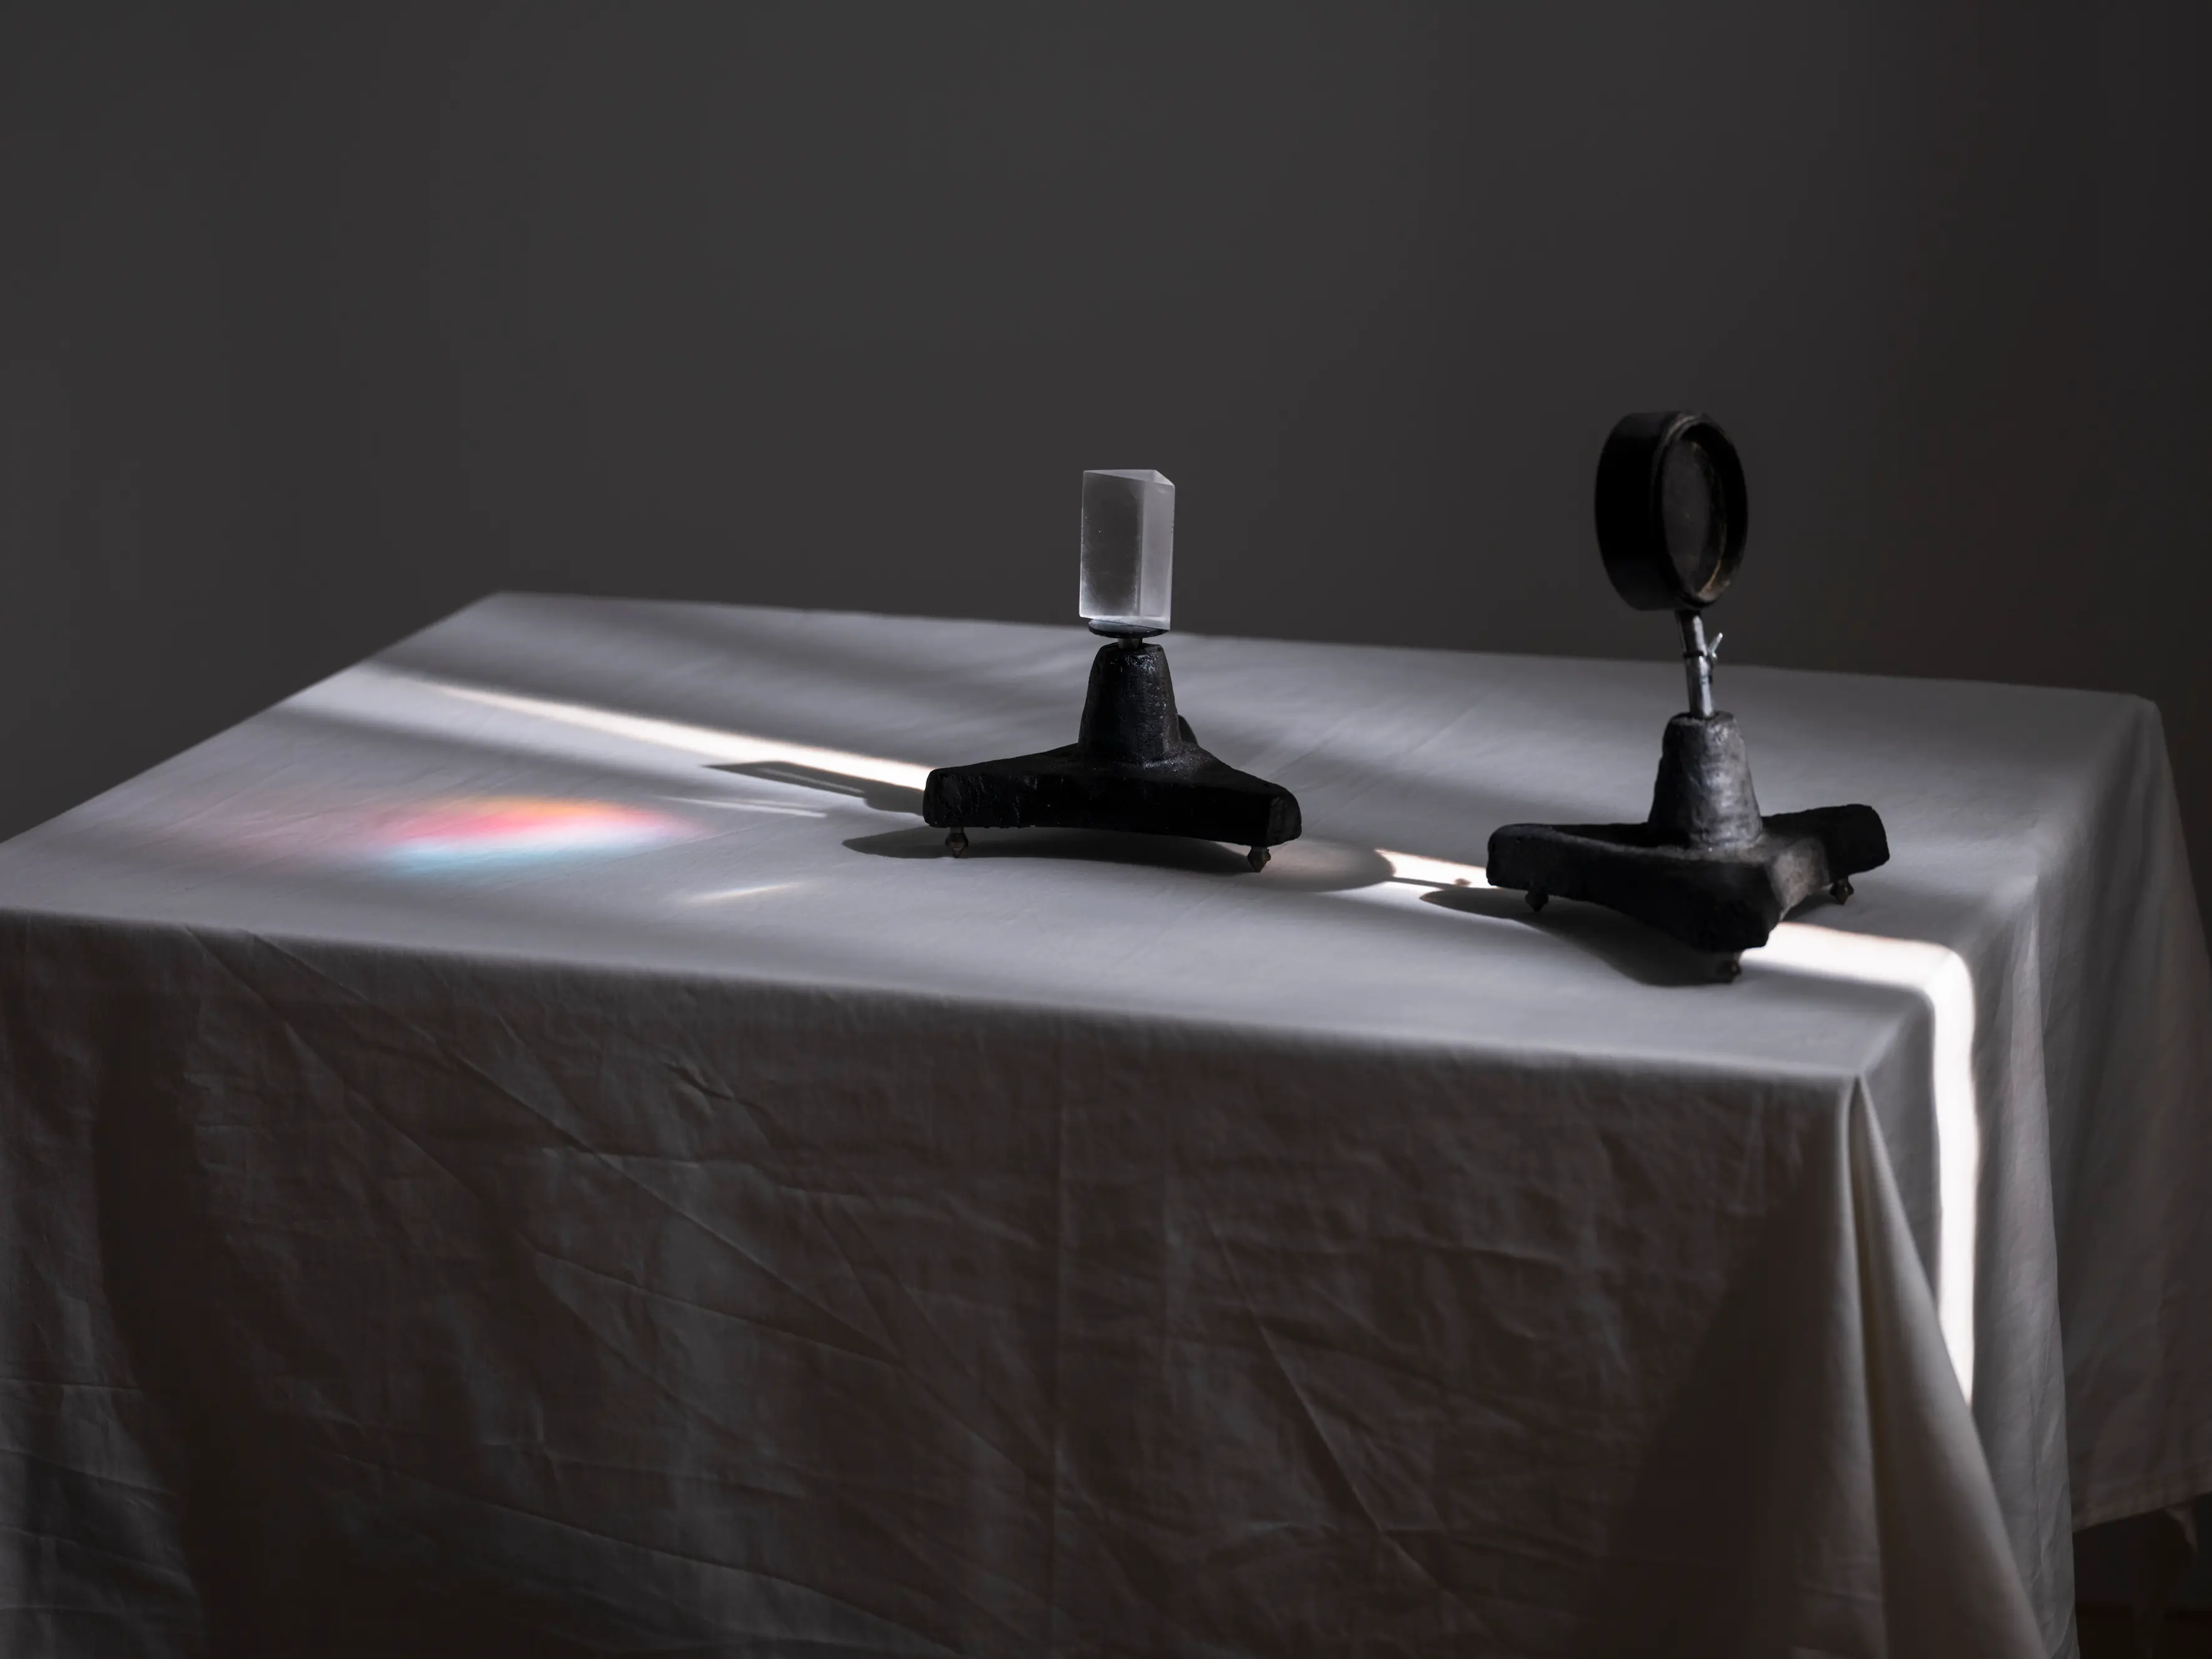 Två objekt står på ett bord med vit duk, solen lyser på objekten från vänster